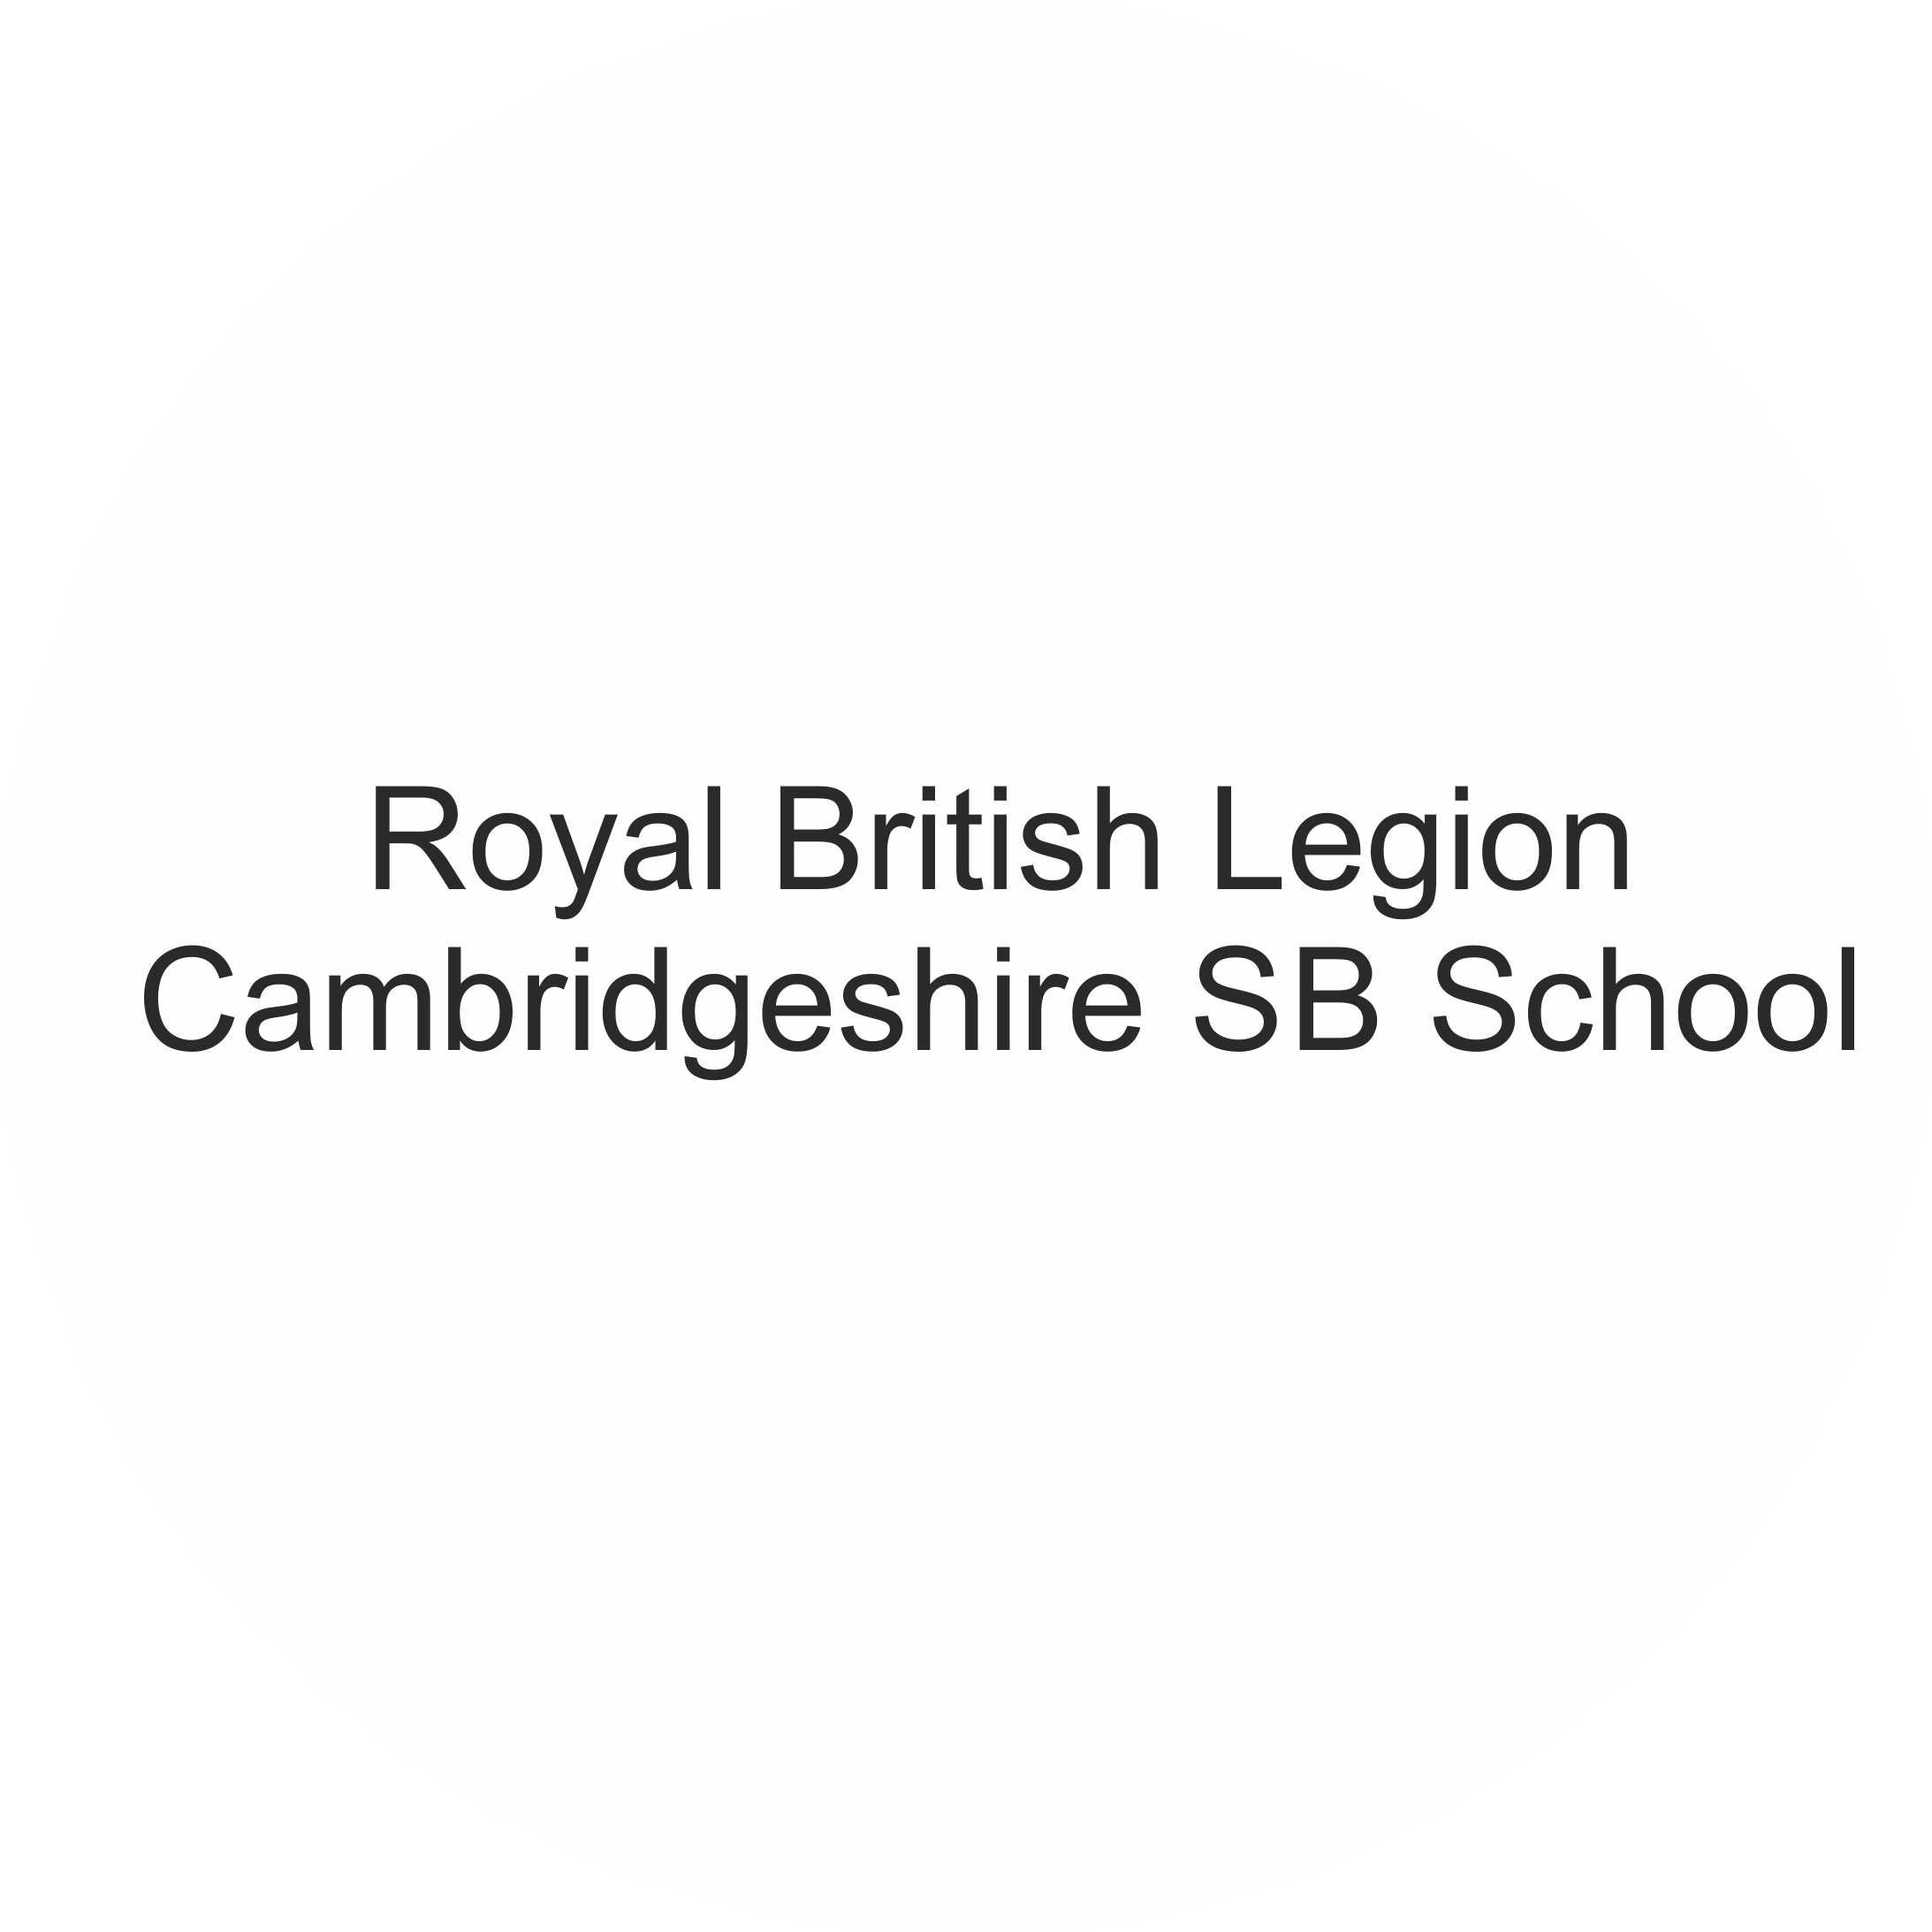 Royal British Legion/Cambridgeshire SB School